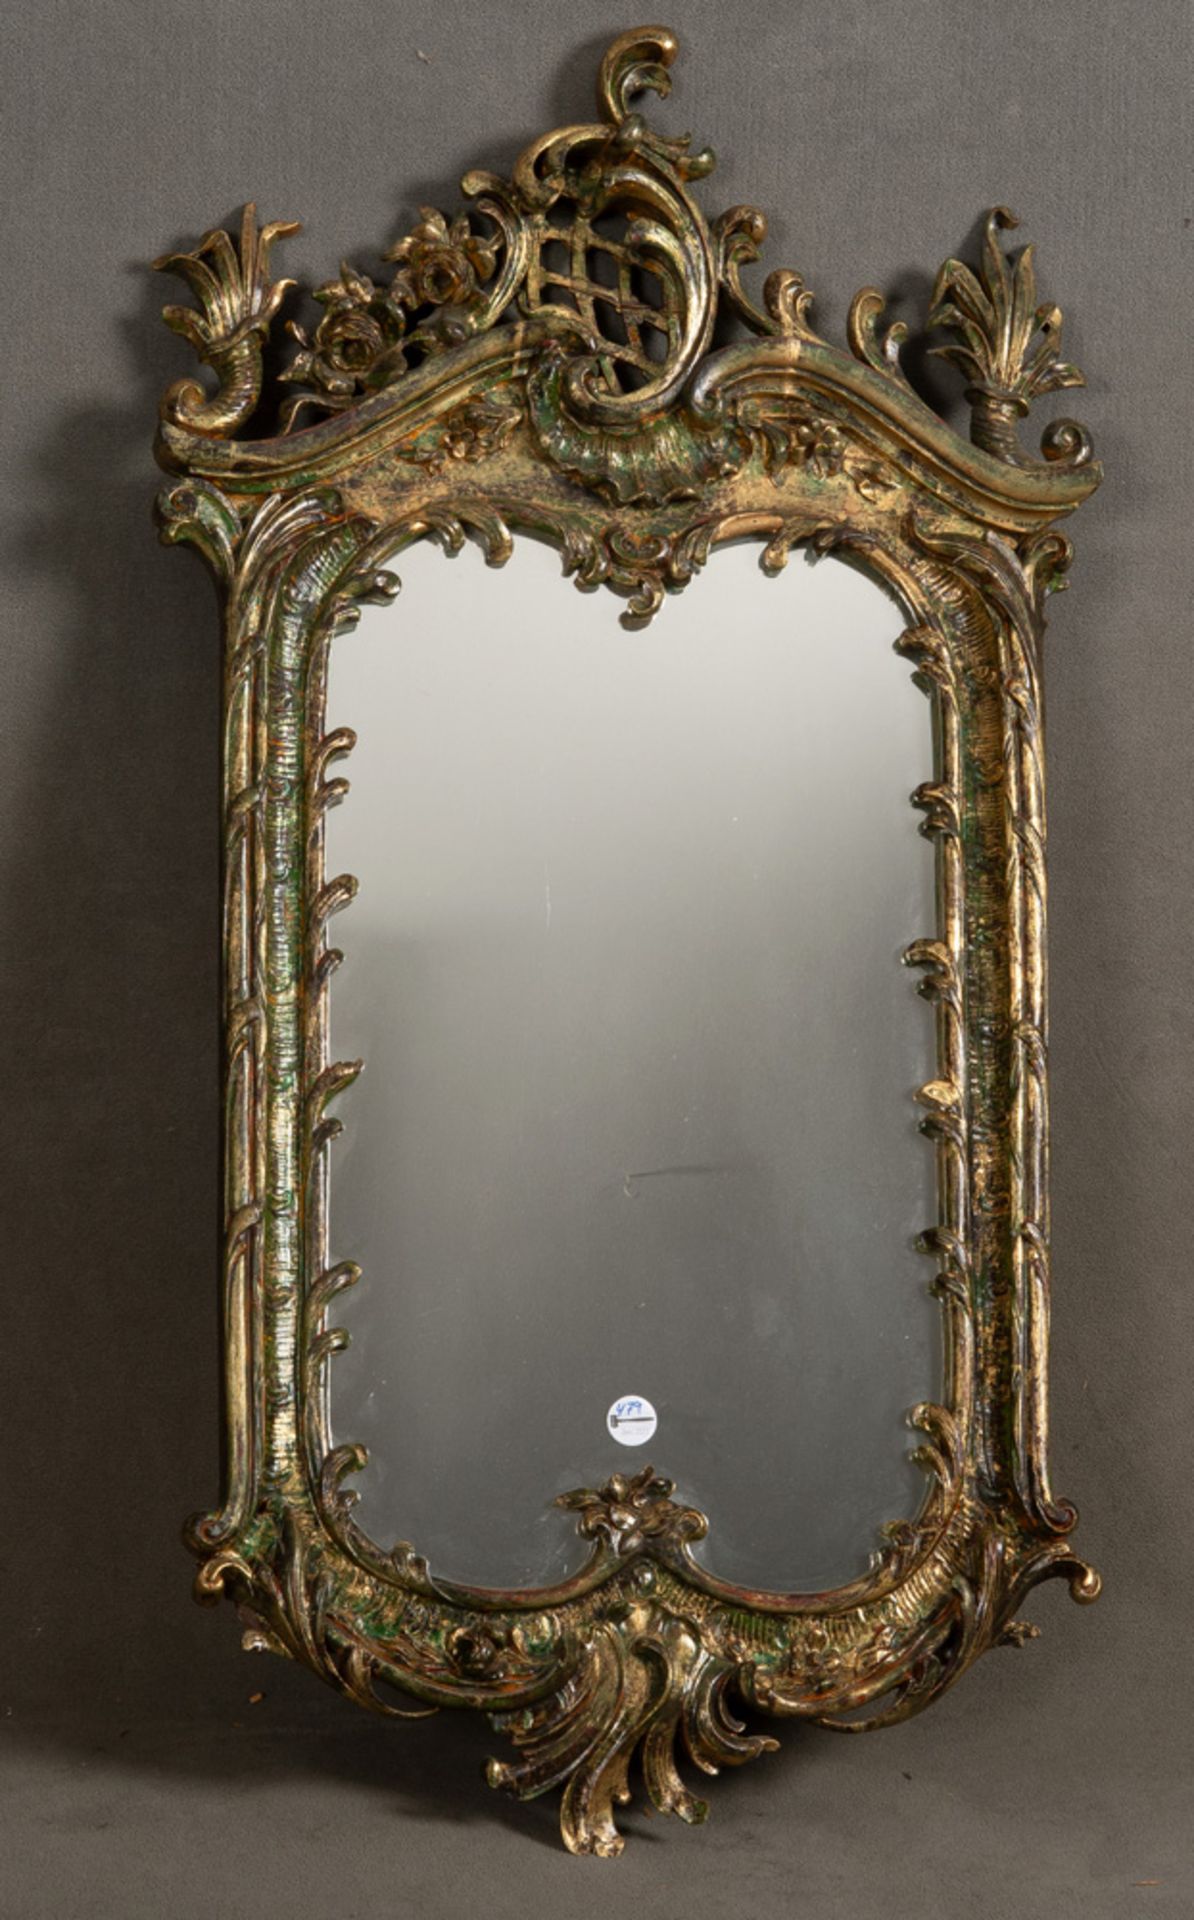 Barock-Spiegel. Bamberg 1730-40. Massivholz, geschnitzt mit Rocaillen, Blüten-, Gitter- und